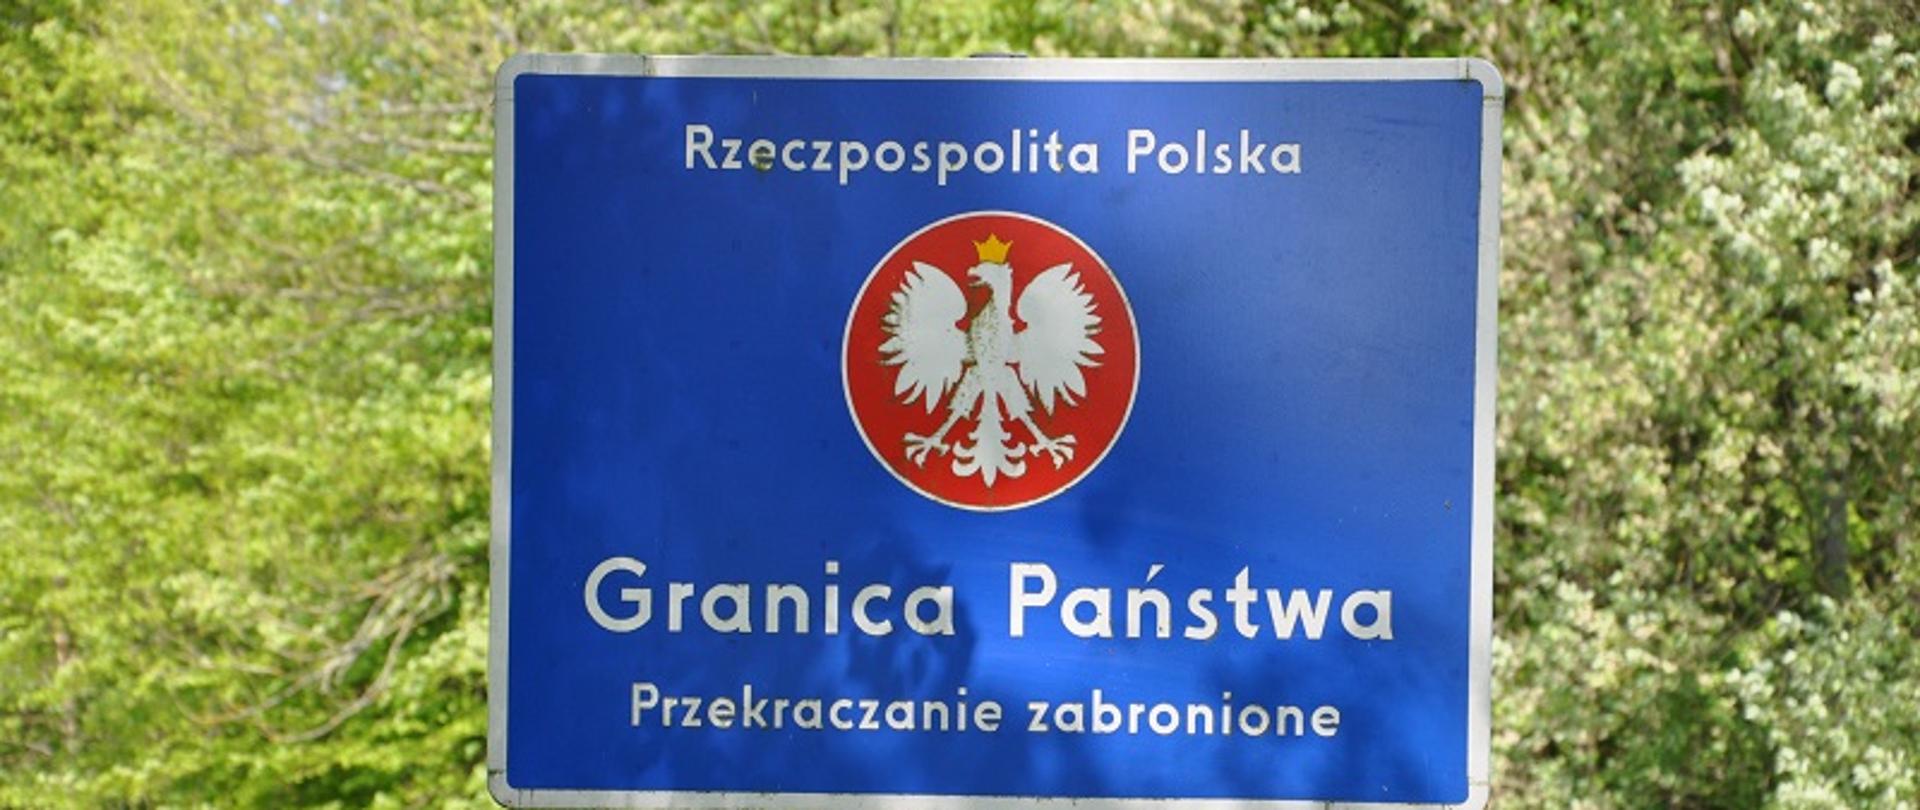 Tablica informacyjna przy granicy, treść: Rzeczpospolita Polska - Granica Państwa, przekraczanie zabronione